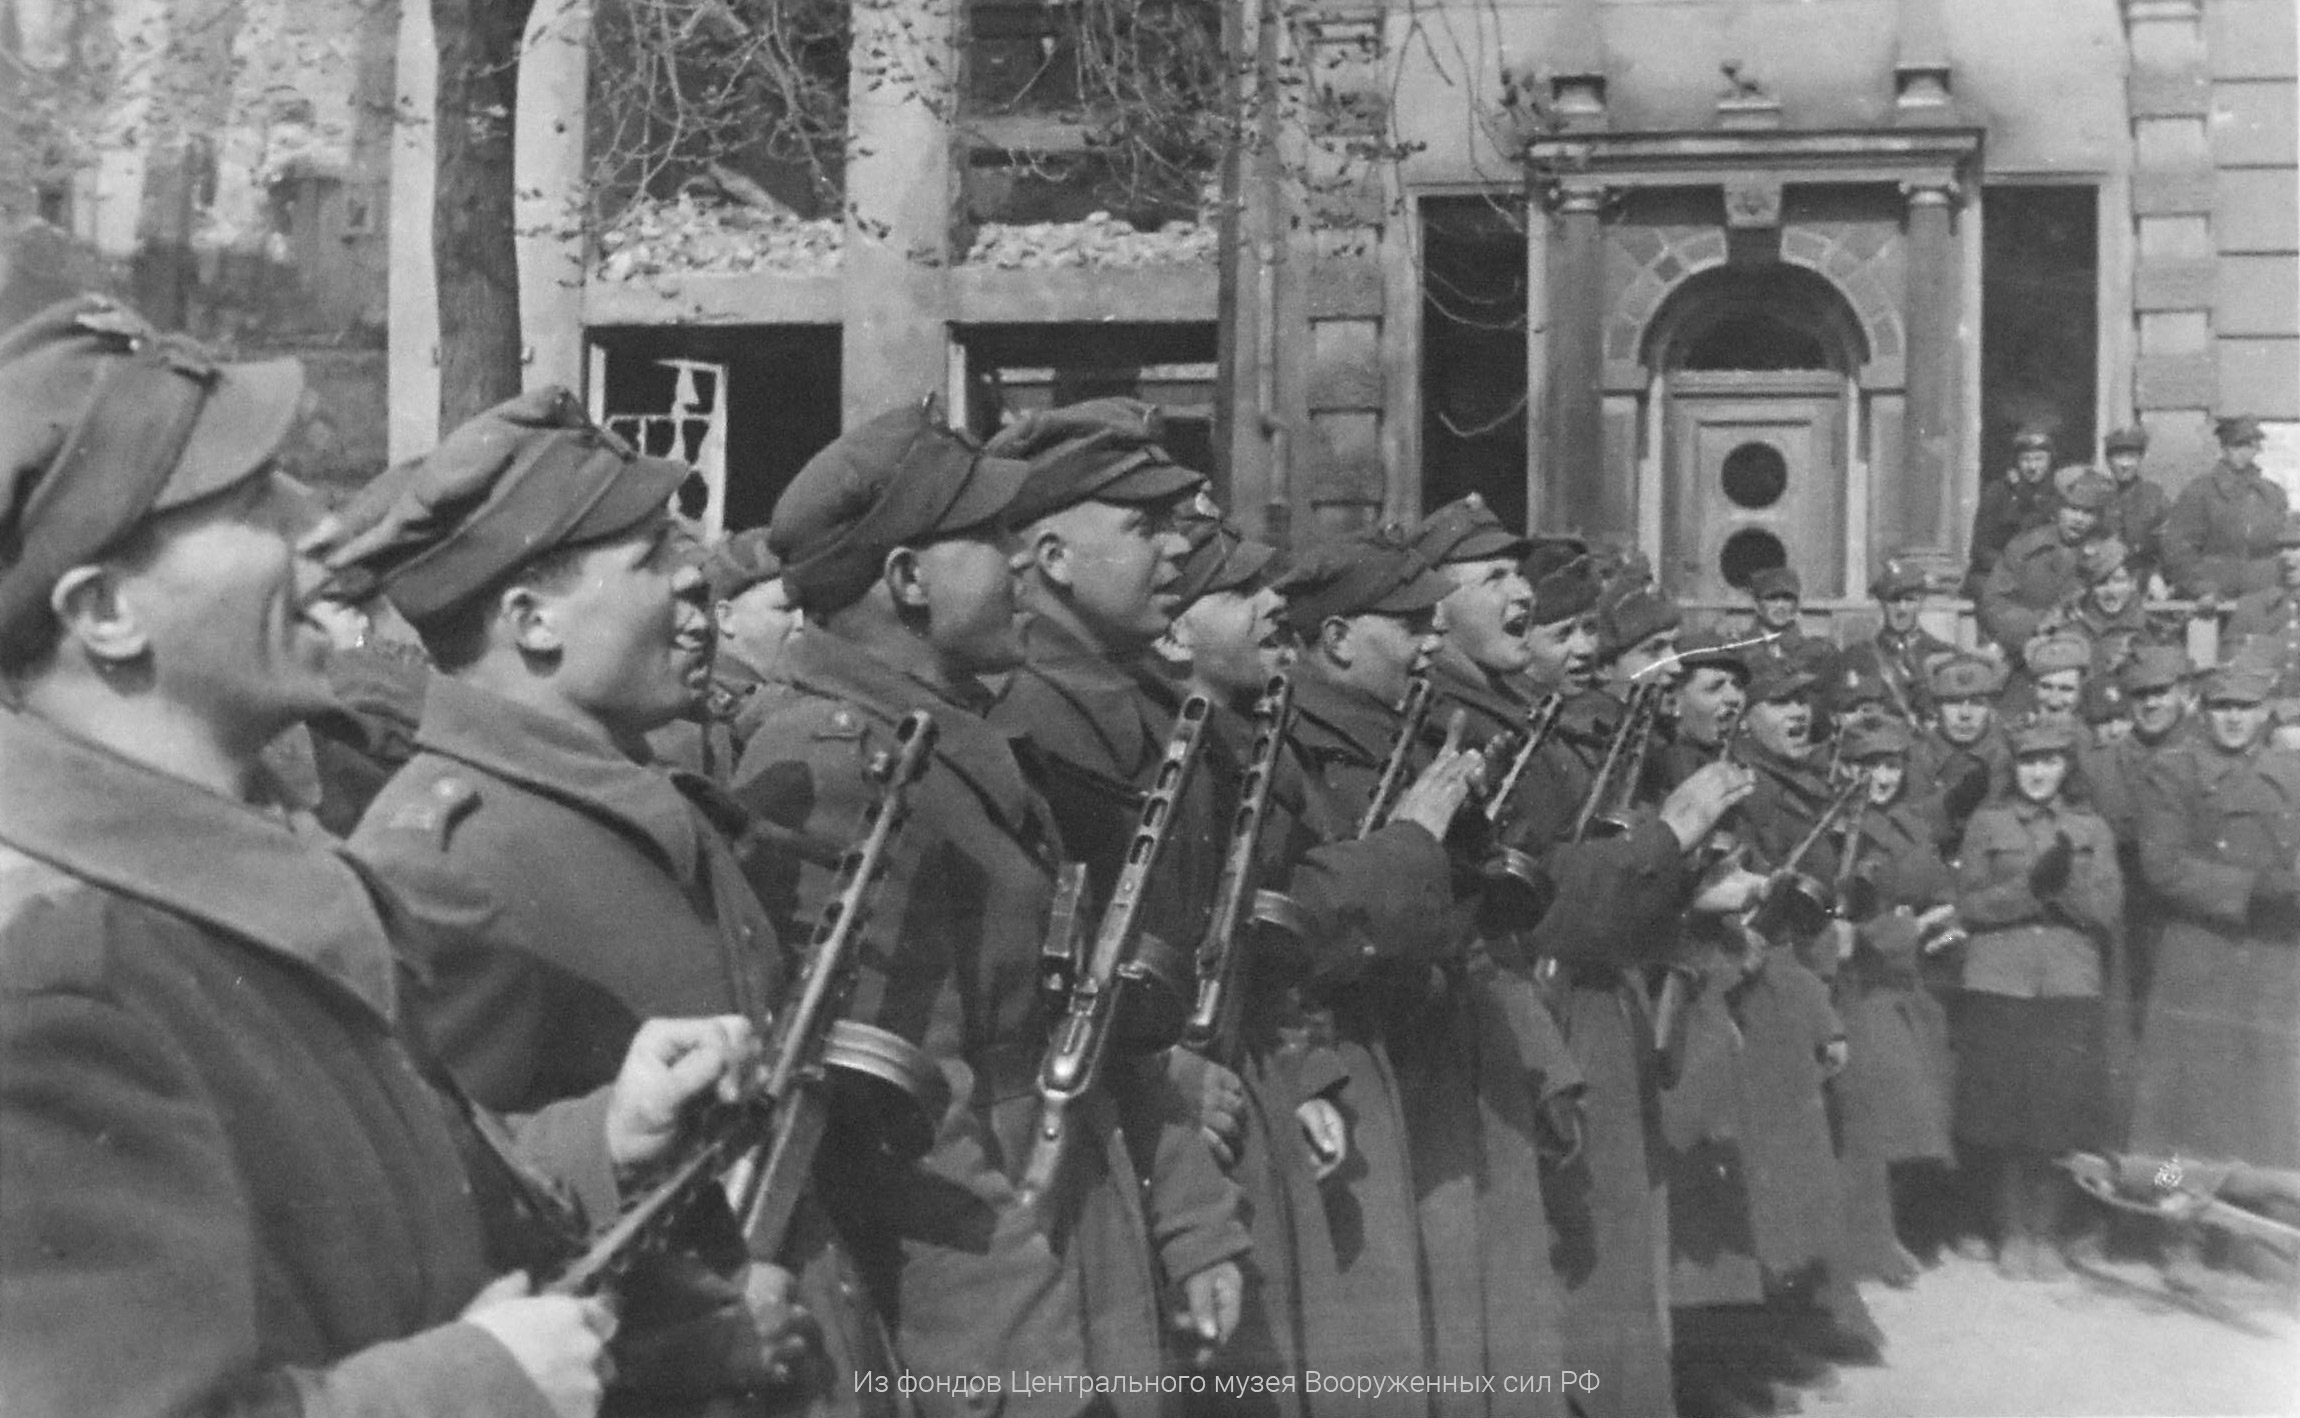 Бойцы и офицеры 4-й польской танковой бригады на митинге по случаю поднятия национального флага